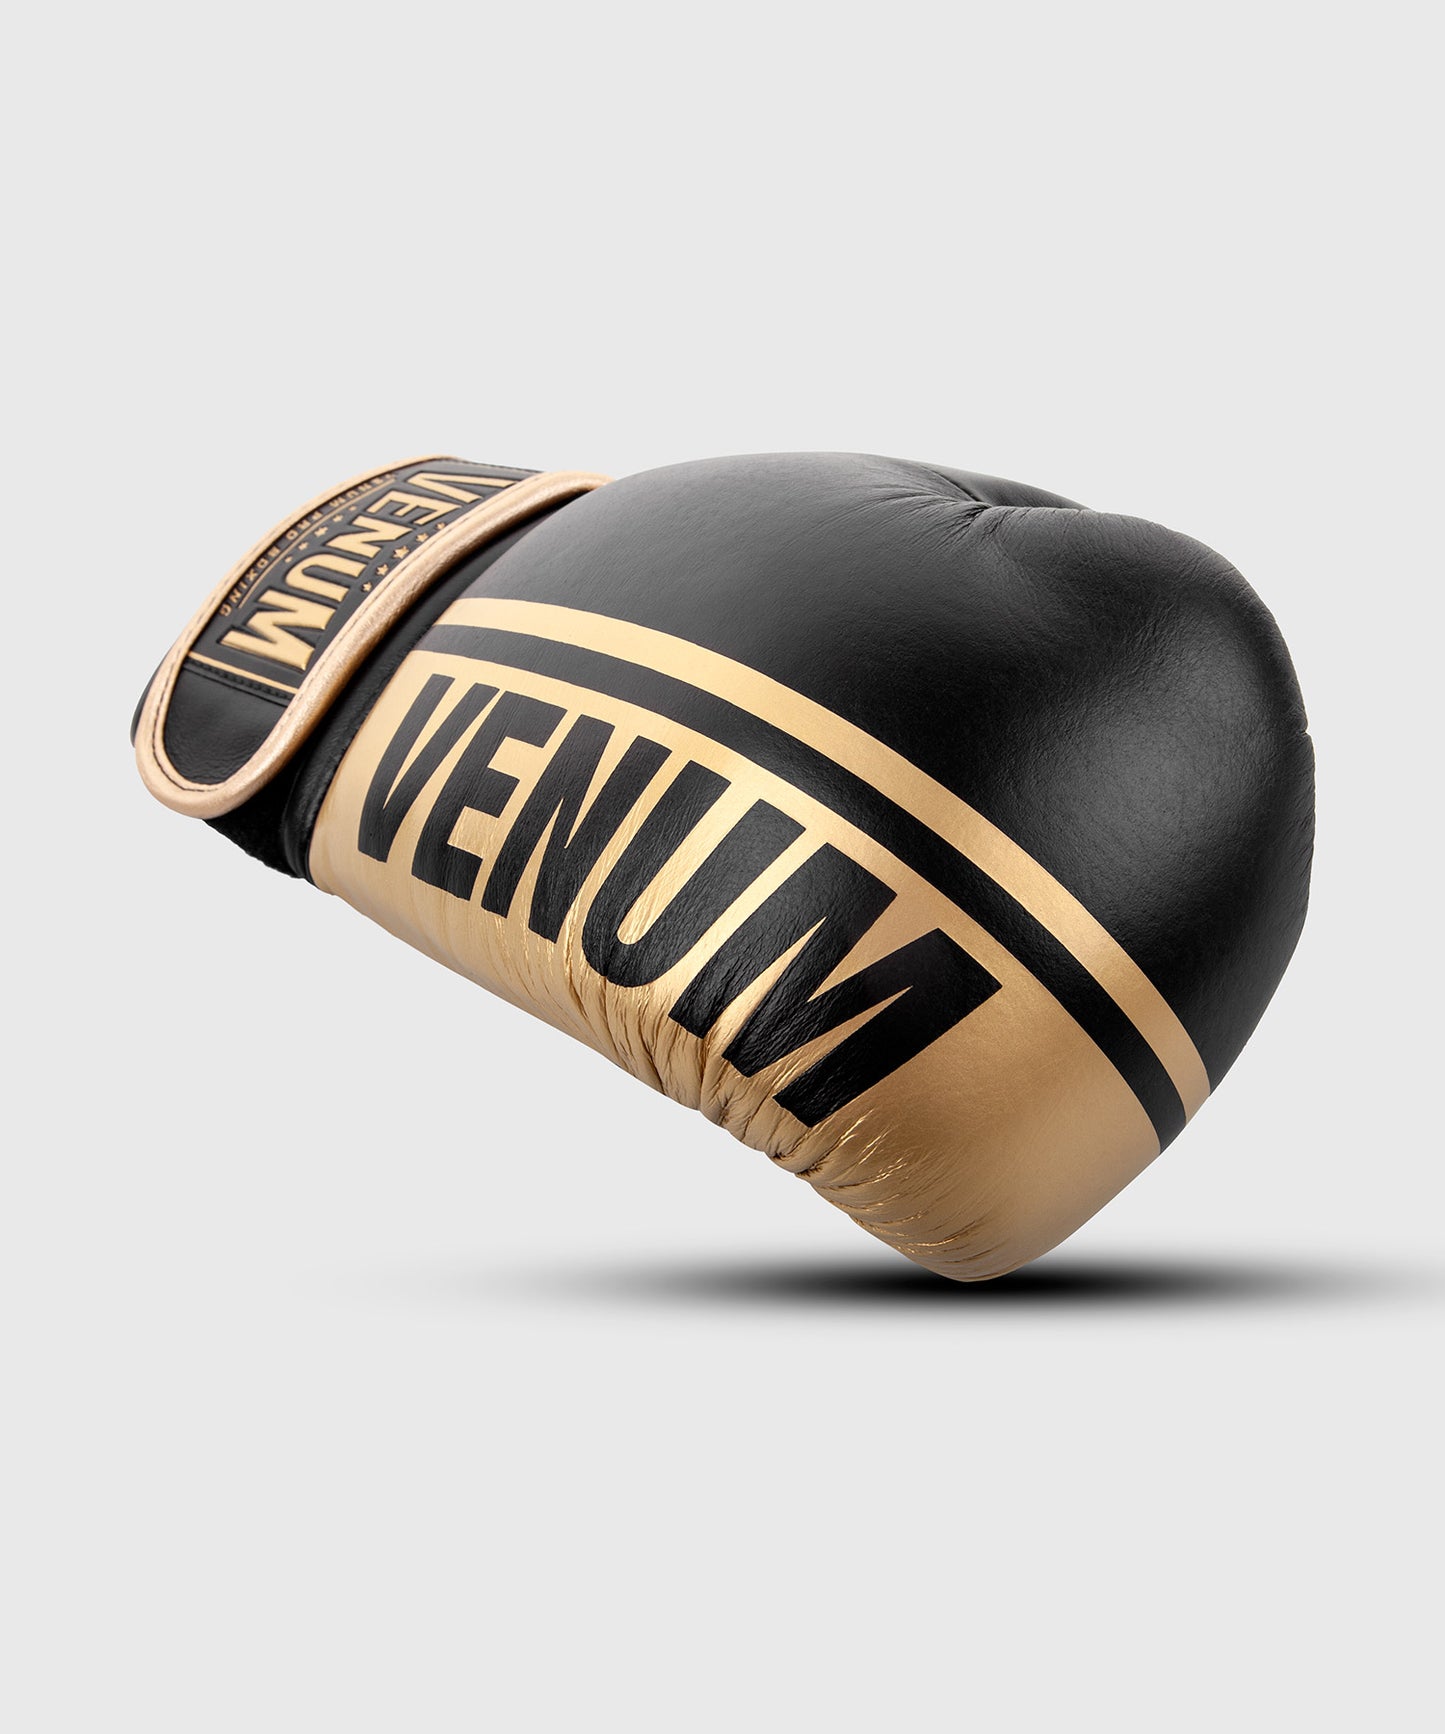 Guantoni da boxe professionali Venum Shield – Velcro - Nero/Oro